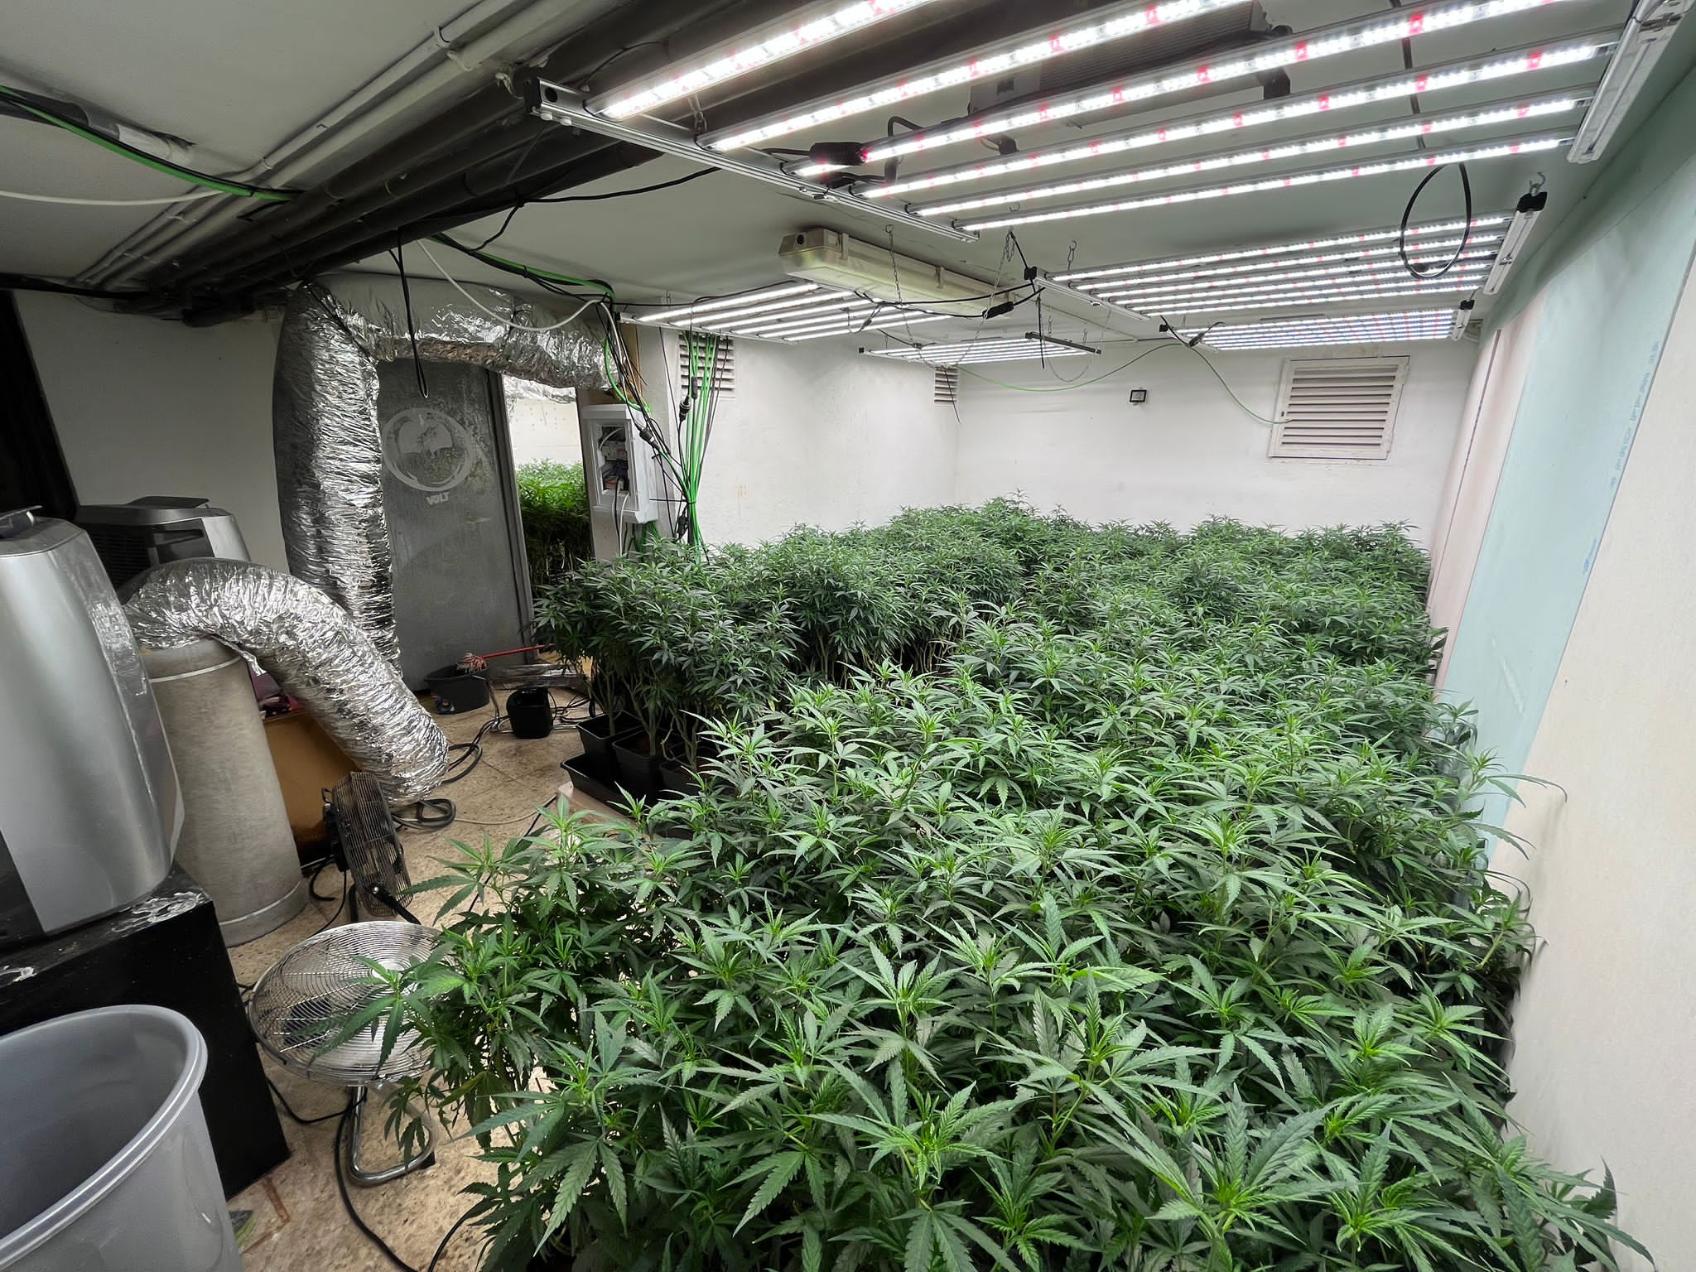 La Policía Nacional desmantela una plantación de marihuana instalada en un club de alterne abandonado